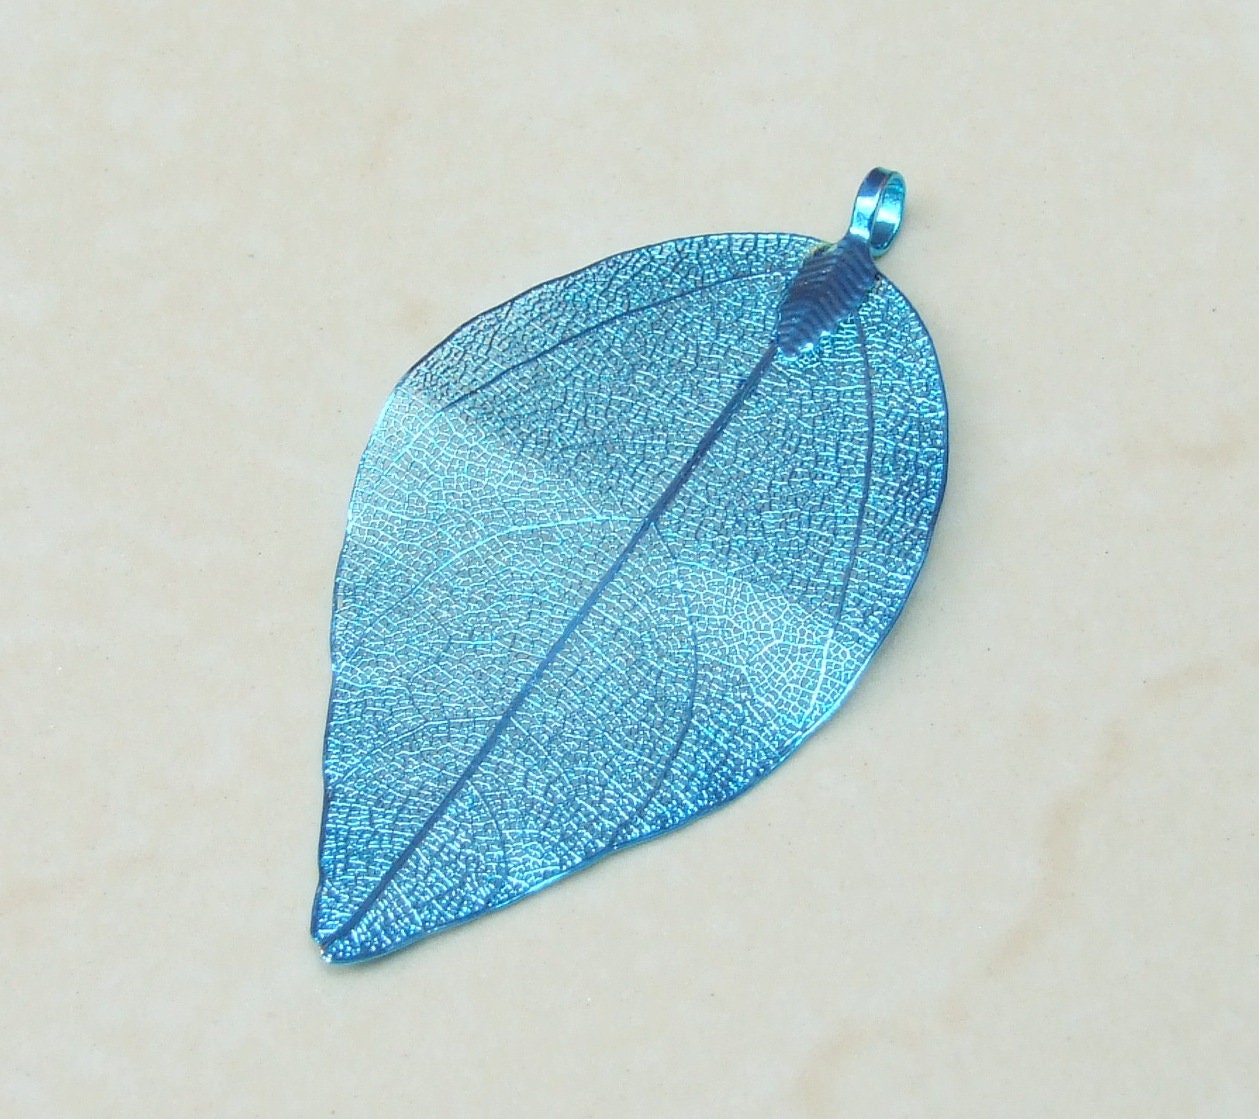 Liquid Metal Leaf Pendant - Large Leaf Pendant - Autumn Leaf - Blue - BOHO - Tribal - 35mm x 64mm - 2260